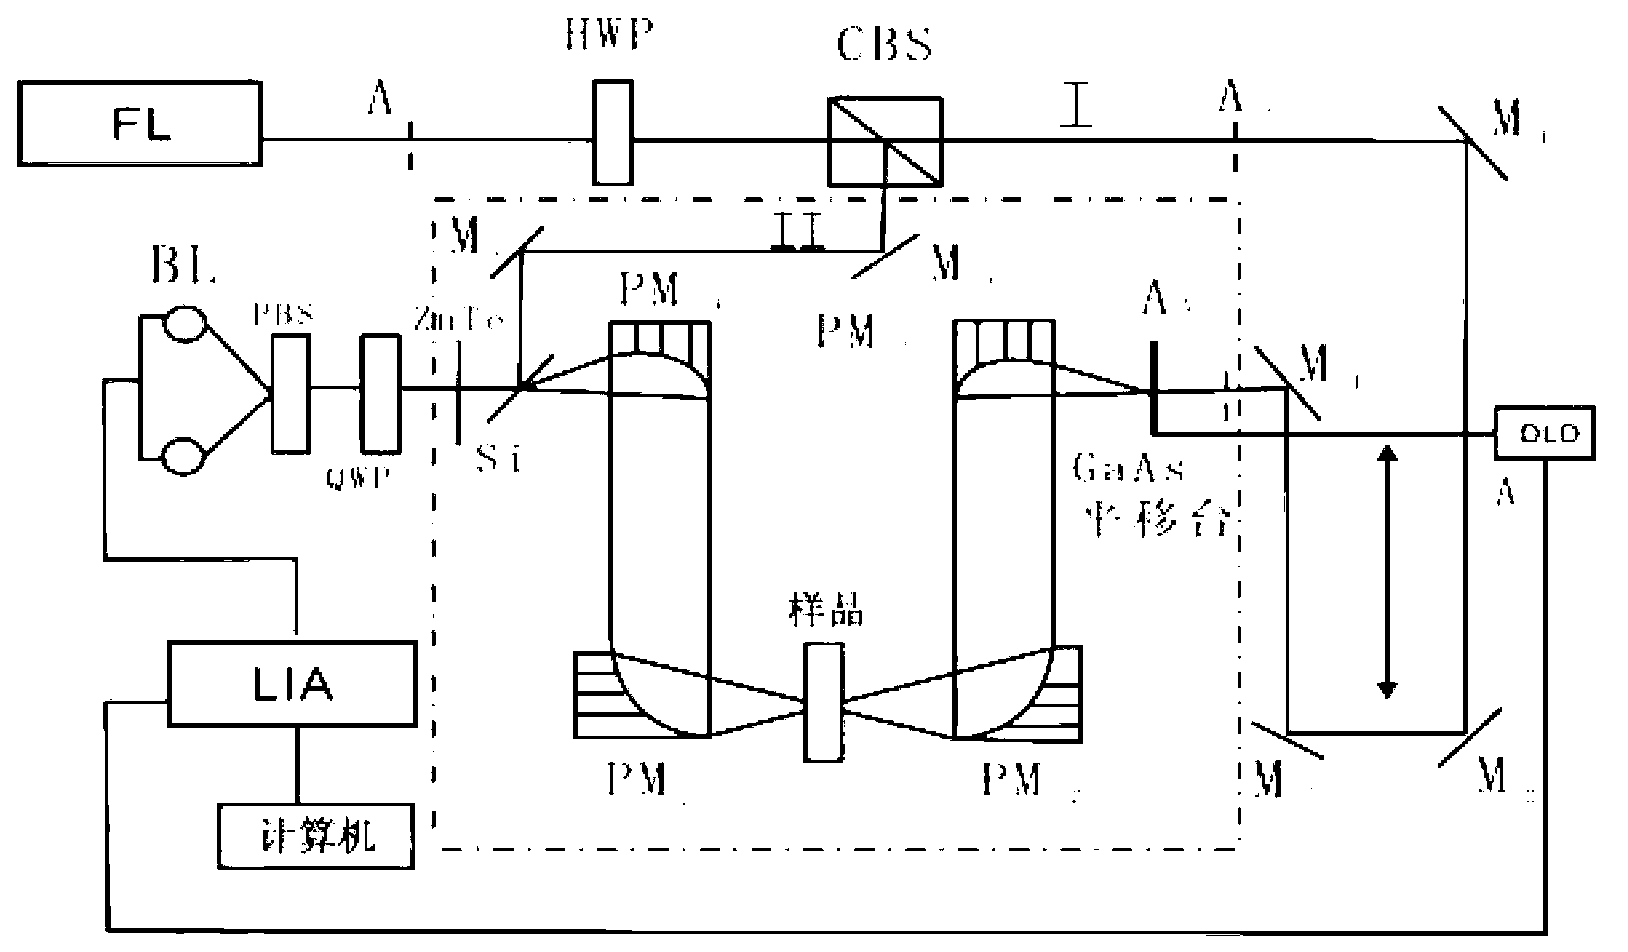 Method for identifying bamboo hemp fiber by using terahertz time-domain spectroscopy technique